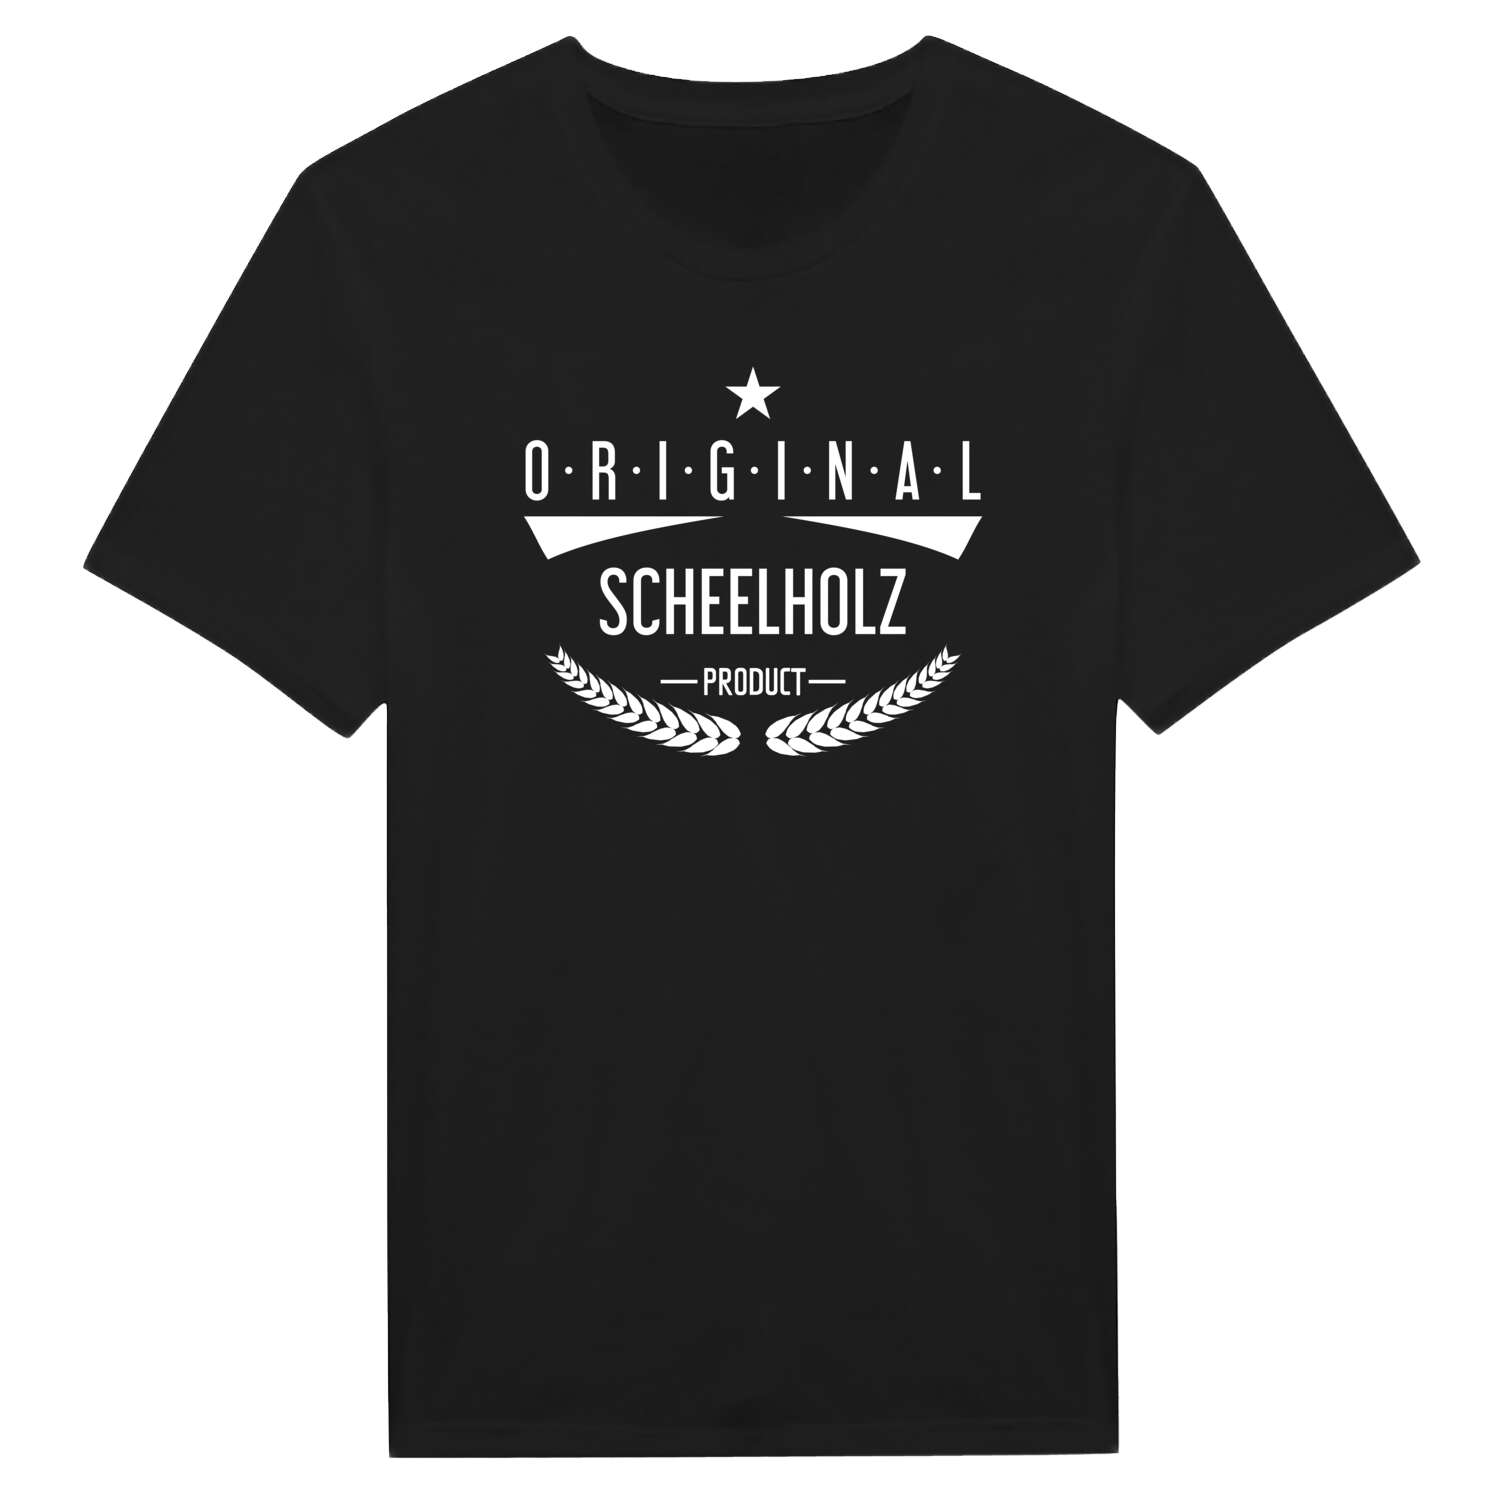 Scheelholz T-Shirt »Original Product«